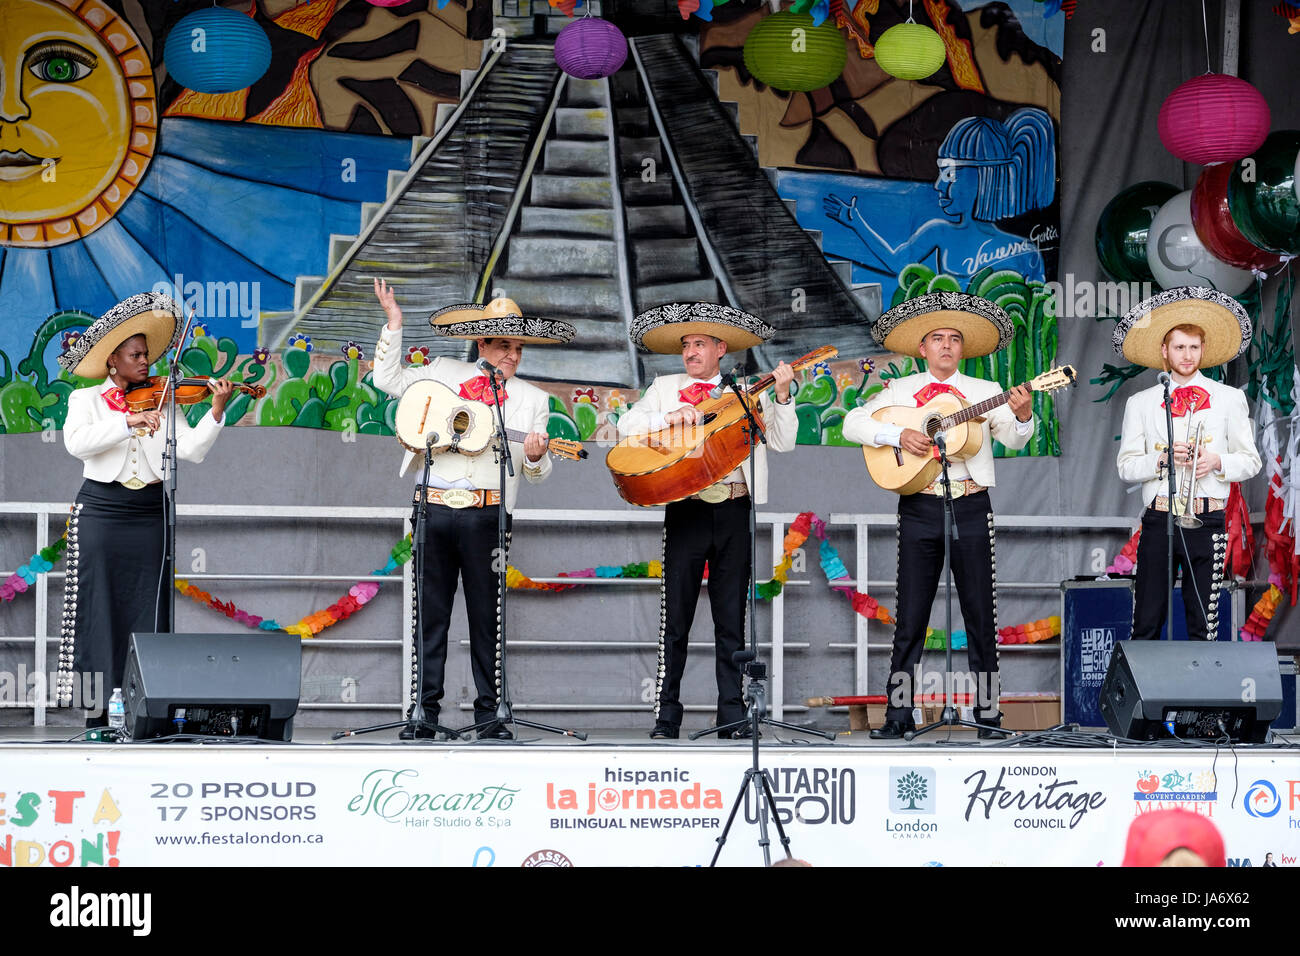 Tradizionale mariachi band che suona musica dal vivo sul palco della Fiesta Londra! Festival messicano, mariachi gruppo, musicisti mariachi, tradizionale musica messicana, gruppo di cinque musicisti messicani che indossa il Messico sombreros e suonare strumenti mariachi. Foto Stock